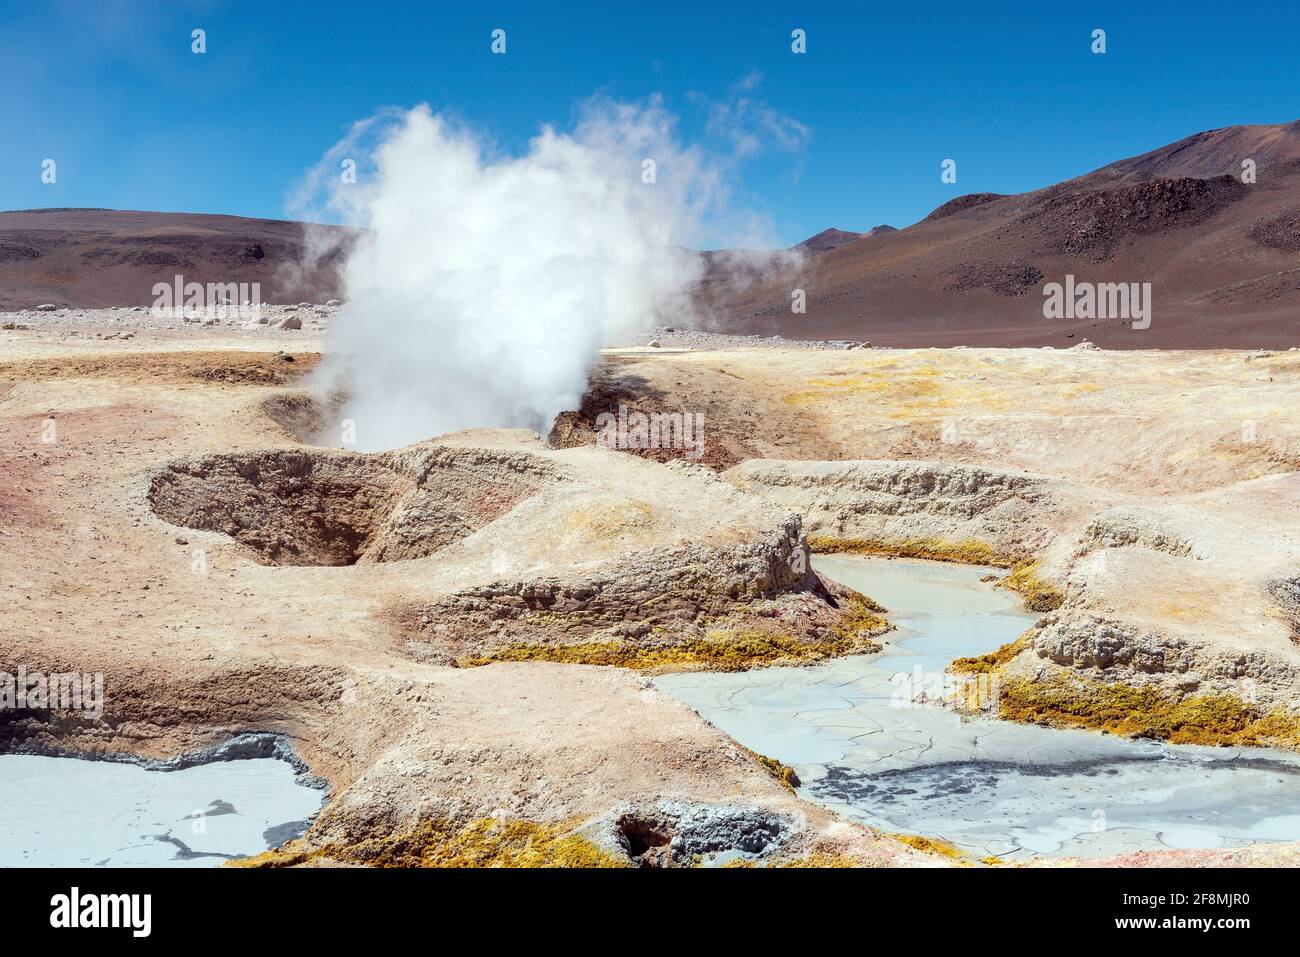 Actividad volcánica con fumarolas, géiseres y pozos de barro, Sol de Manana, Reserva Nacional Eduardo Avaroa, Uyuni, Bolivia. Foto de stock